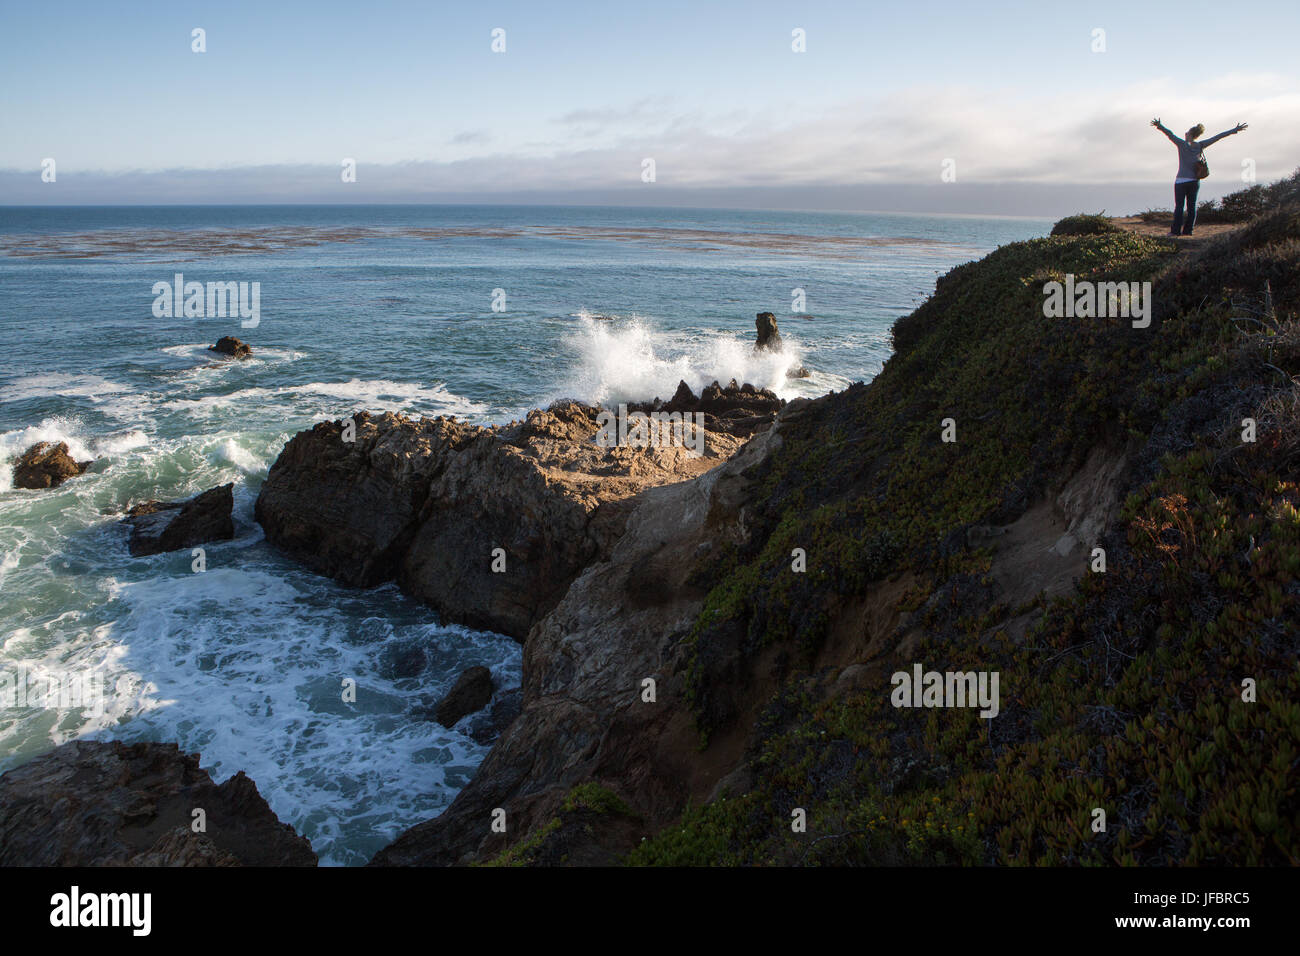 Un touriste sur une formation rocheuse à l'océan Pacifique. Comme les vagues déferlent sur les rochers, elle étend ses bras dans l'excitation. Banque D'Images